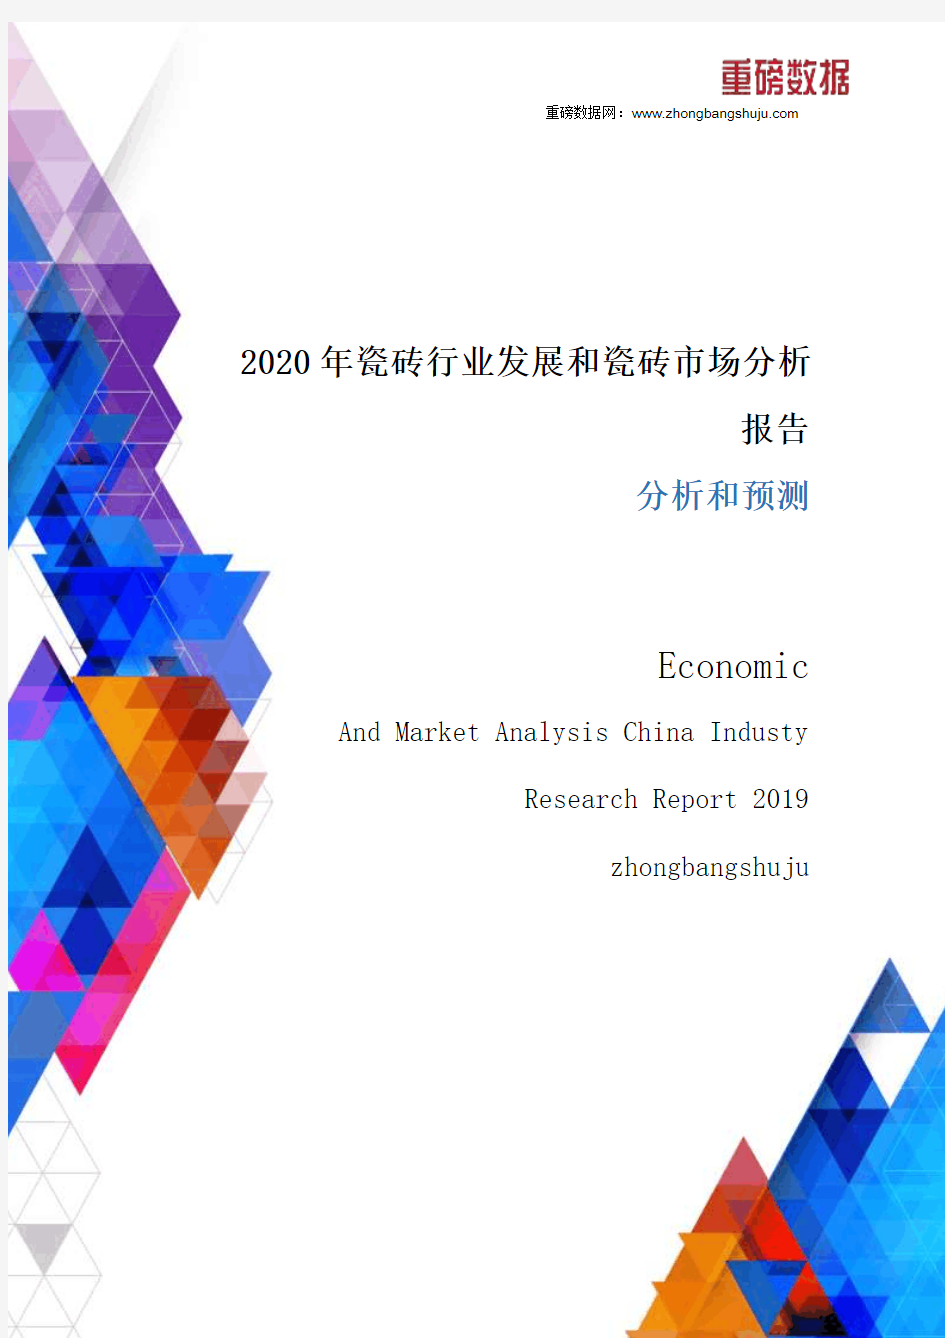 2020年瓷砖行业发展和瓷砖市场分析报告